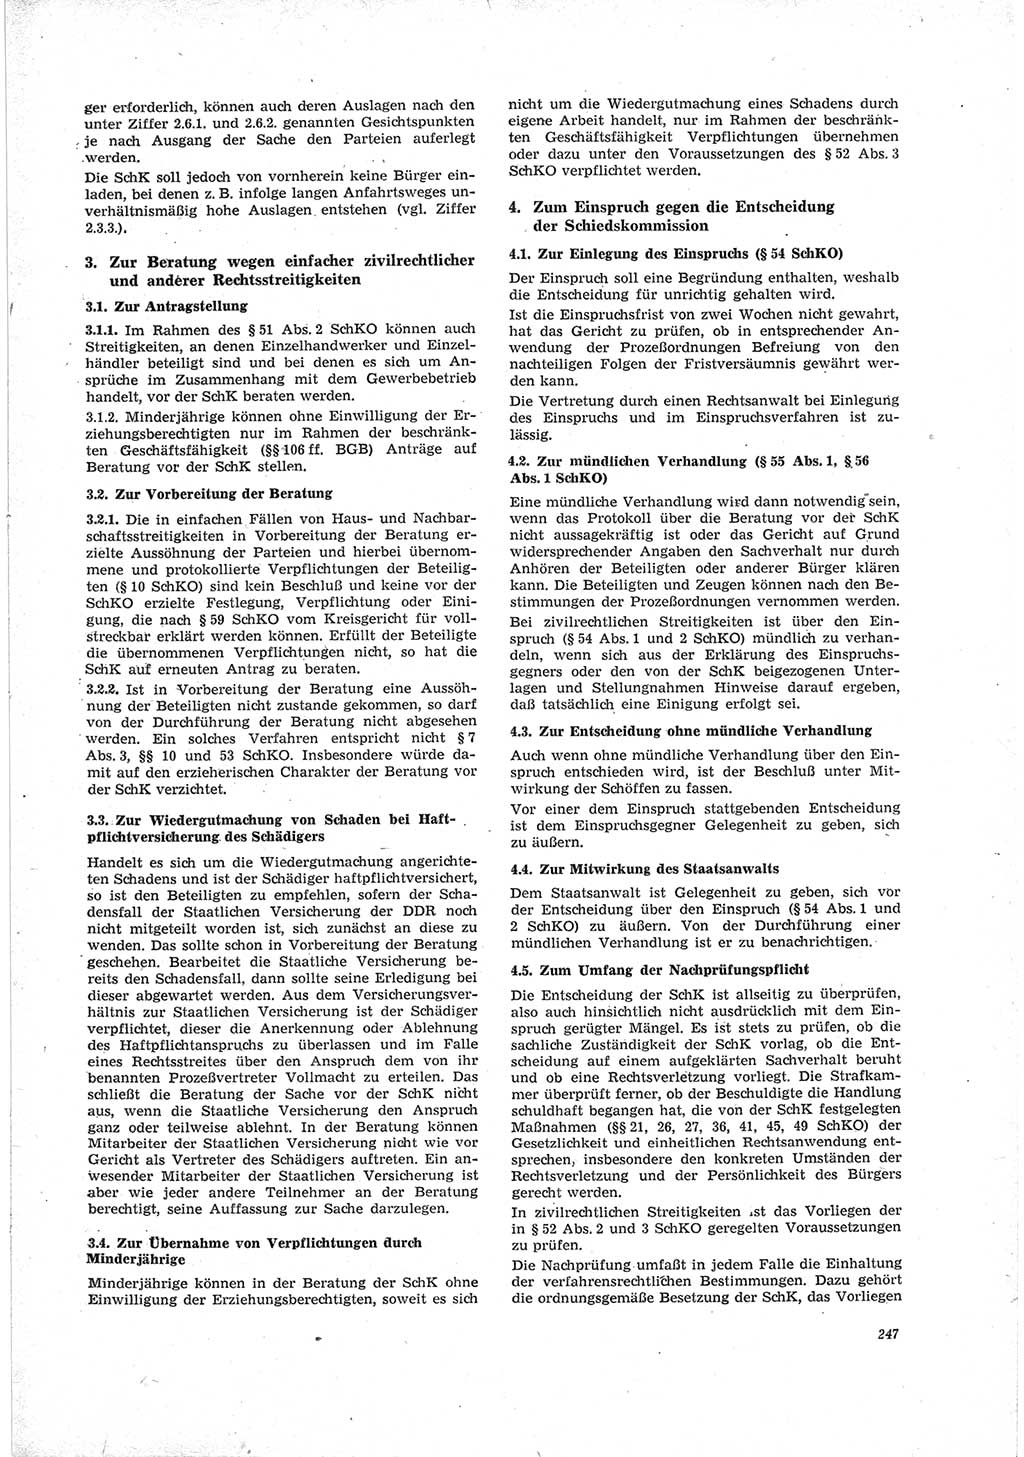 Neue Justiz (NJ), Zeitschrift für Recht und Rechtswissenschaft [Deutsche Demokratische Republik (DDR)], 23. Jahrgang 1969, Seite 247 (NJ DDR 1969, S. 247)